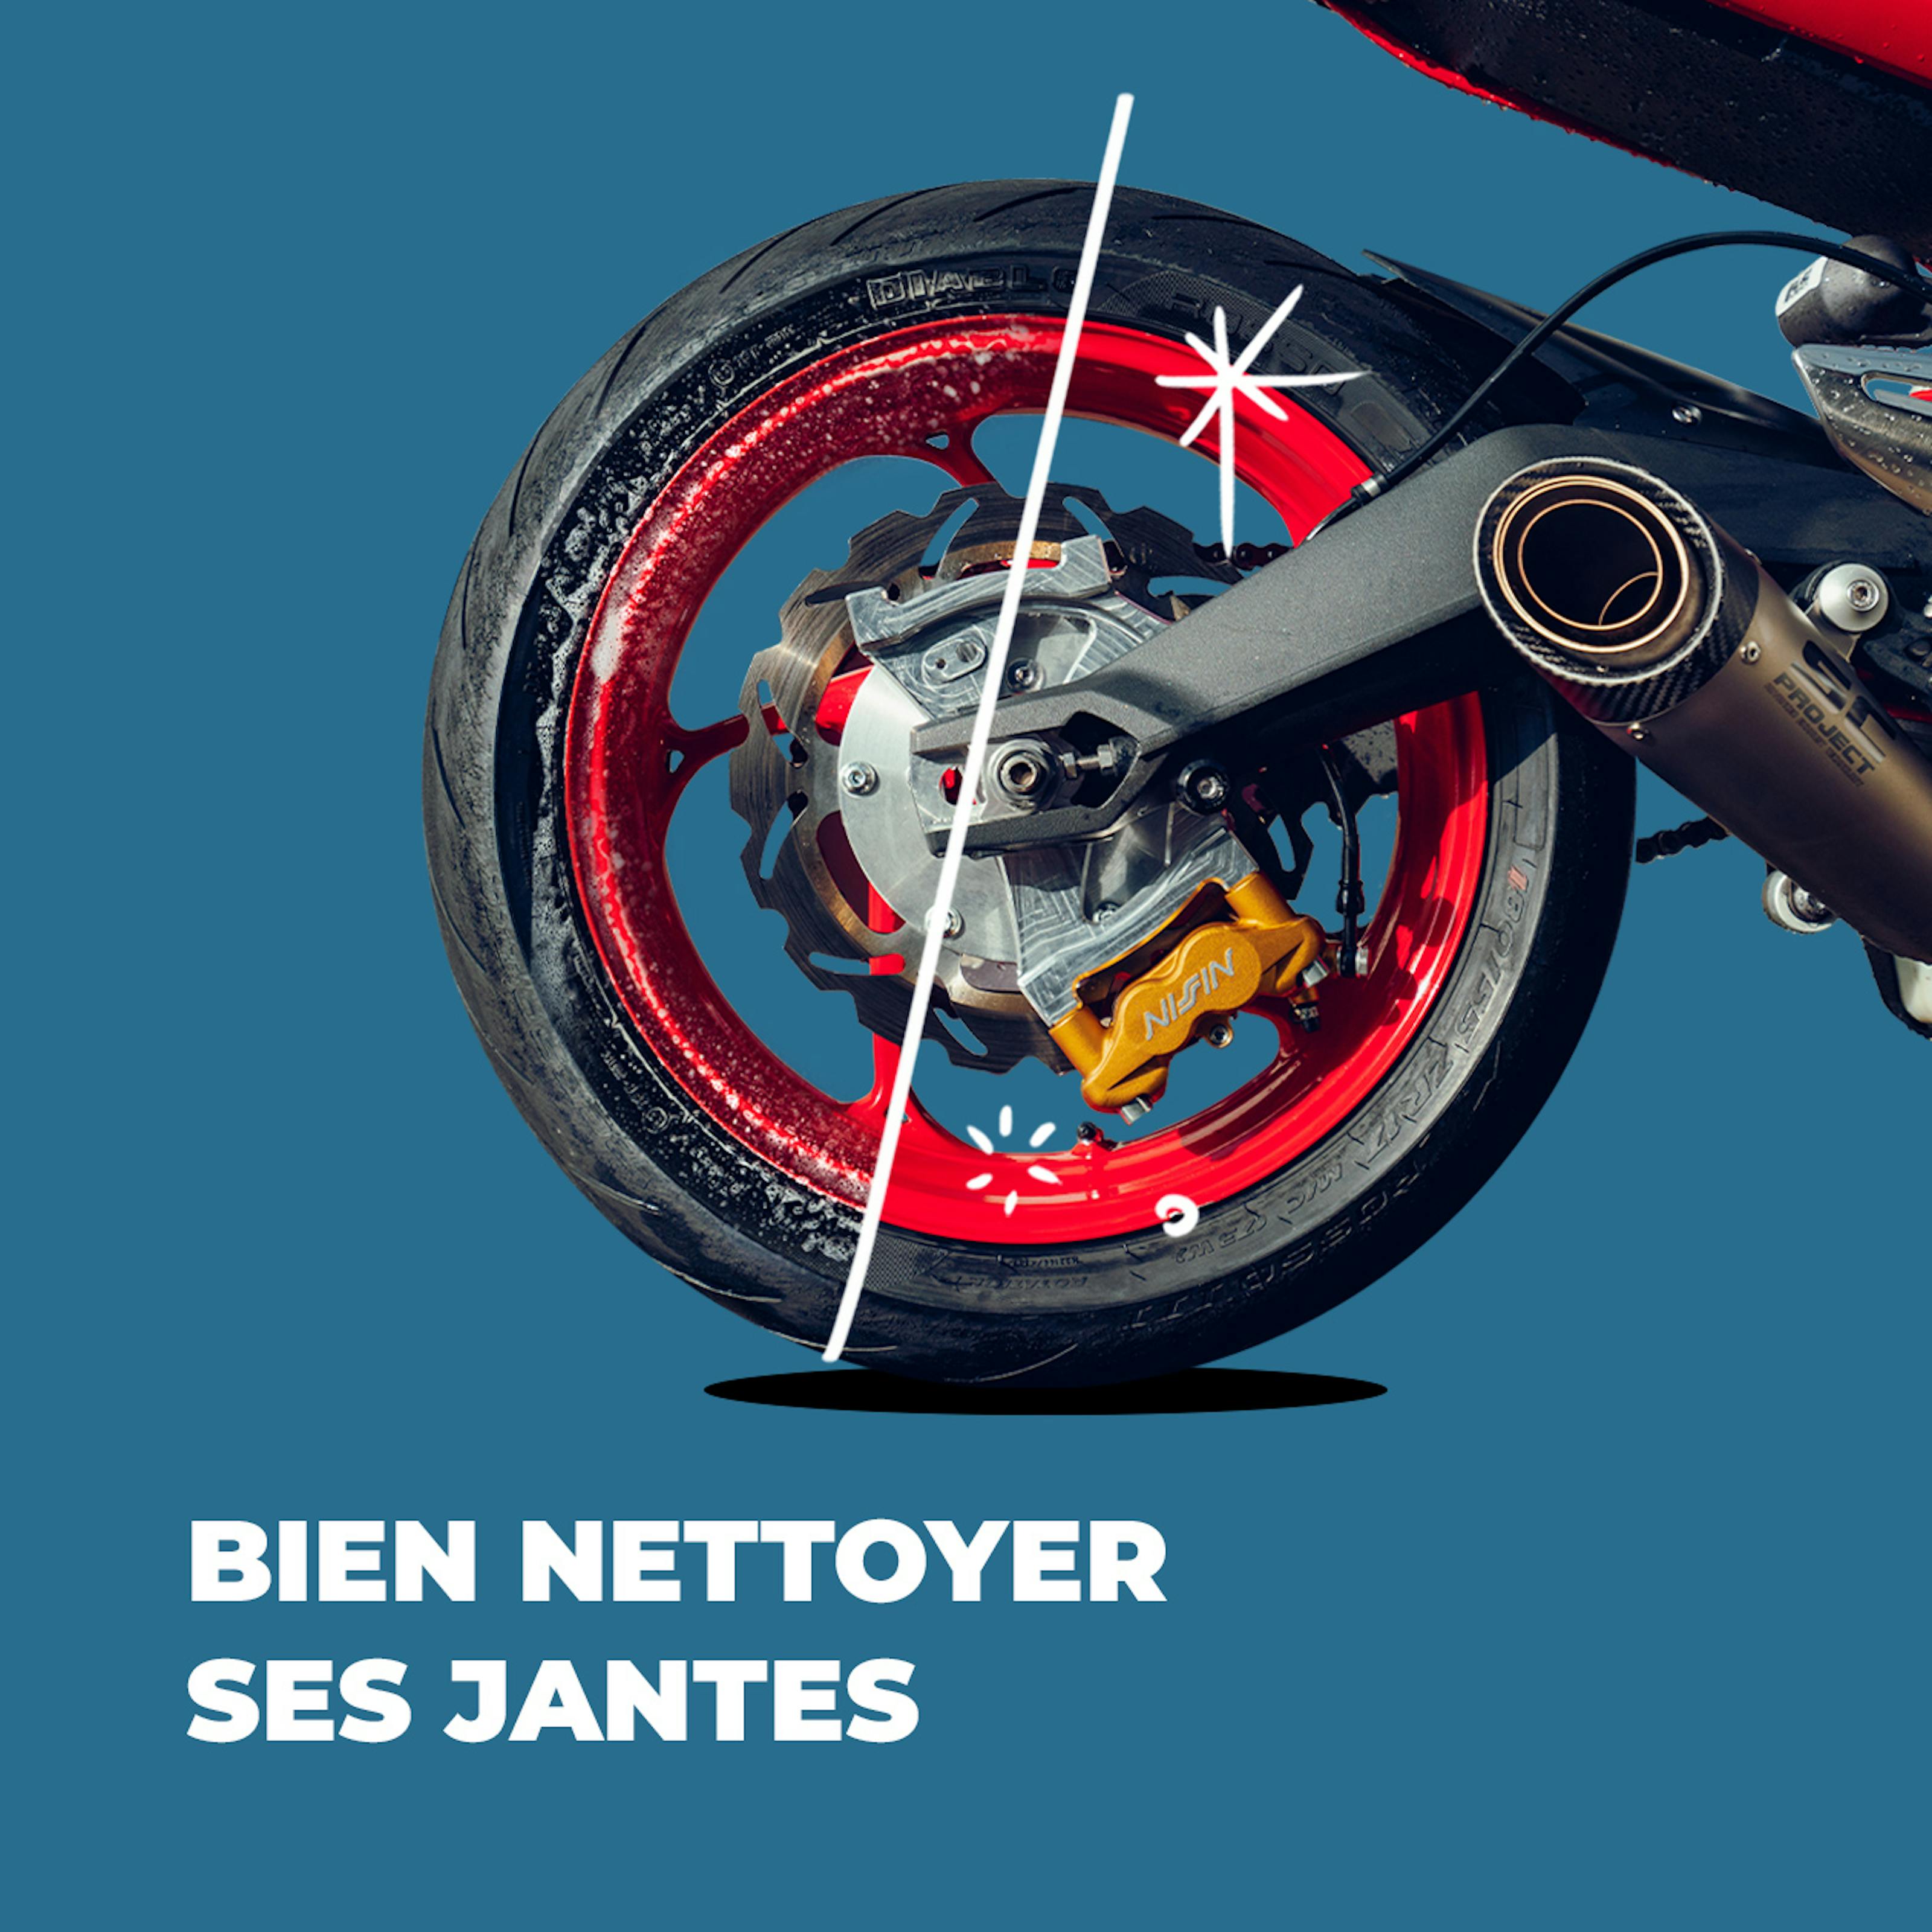 Nettoyer une moto : 4 conseils pratiques et efficaces Le nettoyage fait  partie de l'entretien de la moto. Cela permet de…